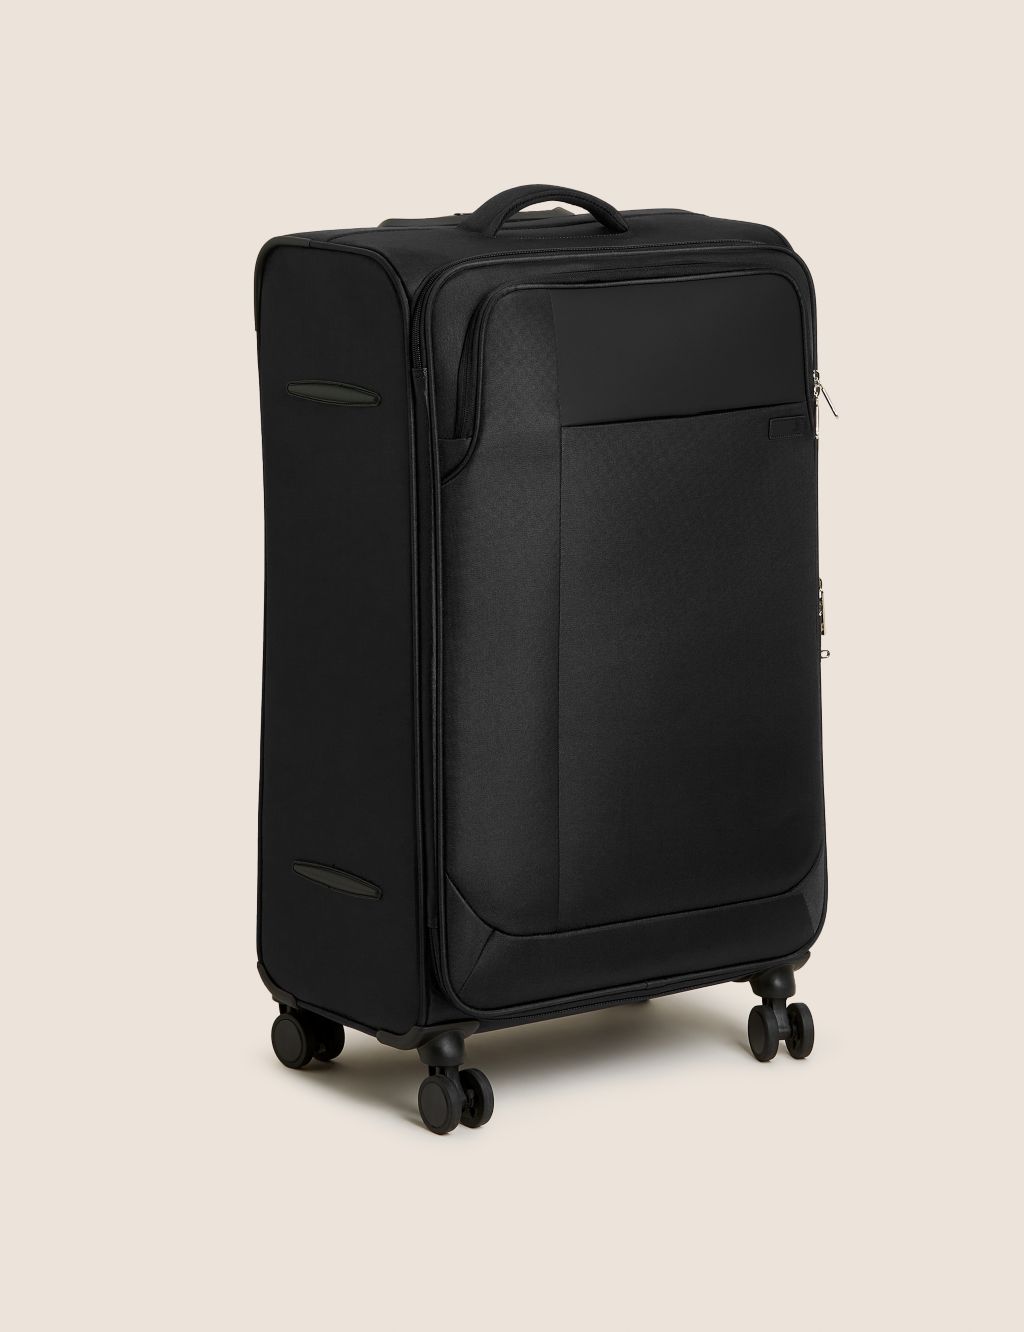 Lyon 4 Wheel Soft Large Suitcase image 1